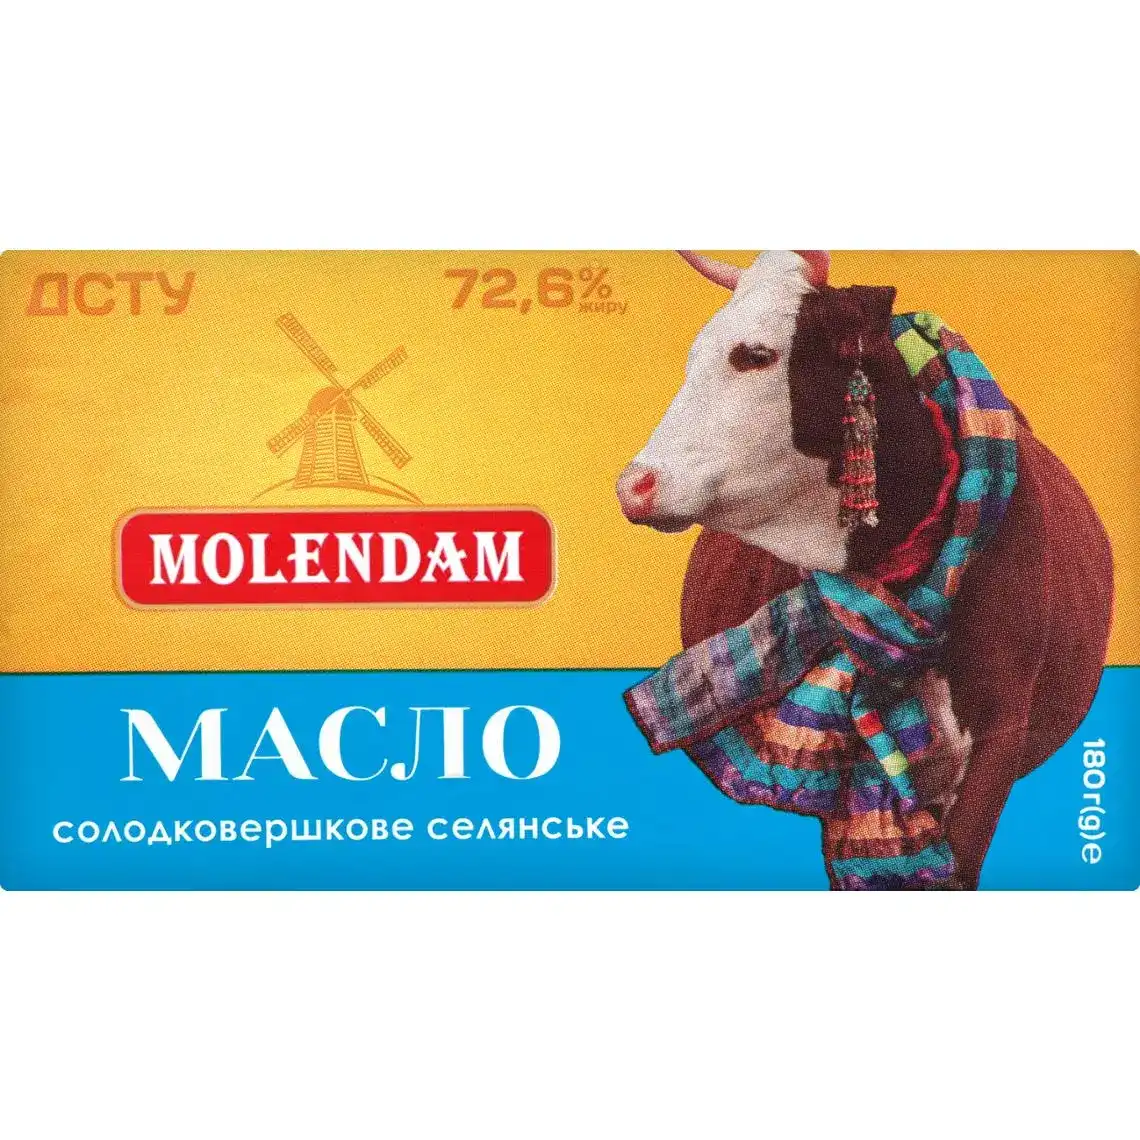 Масло Molendam солодковершкове cелянське 72,6% 180г